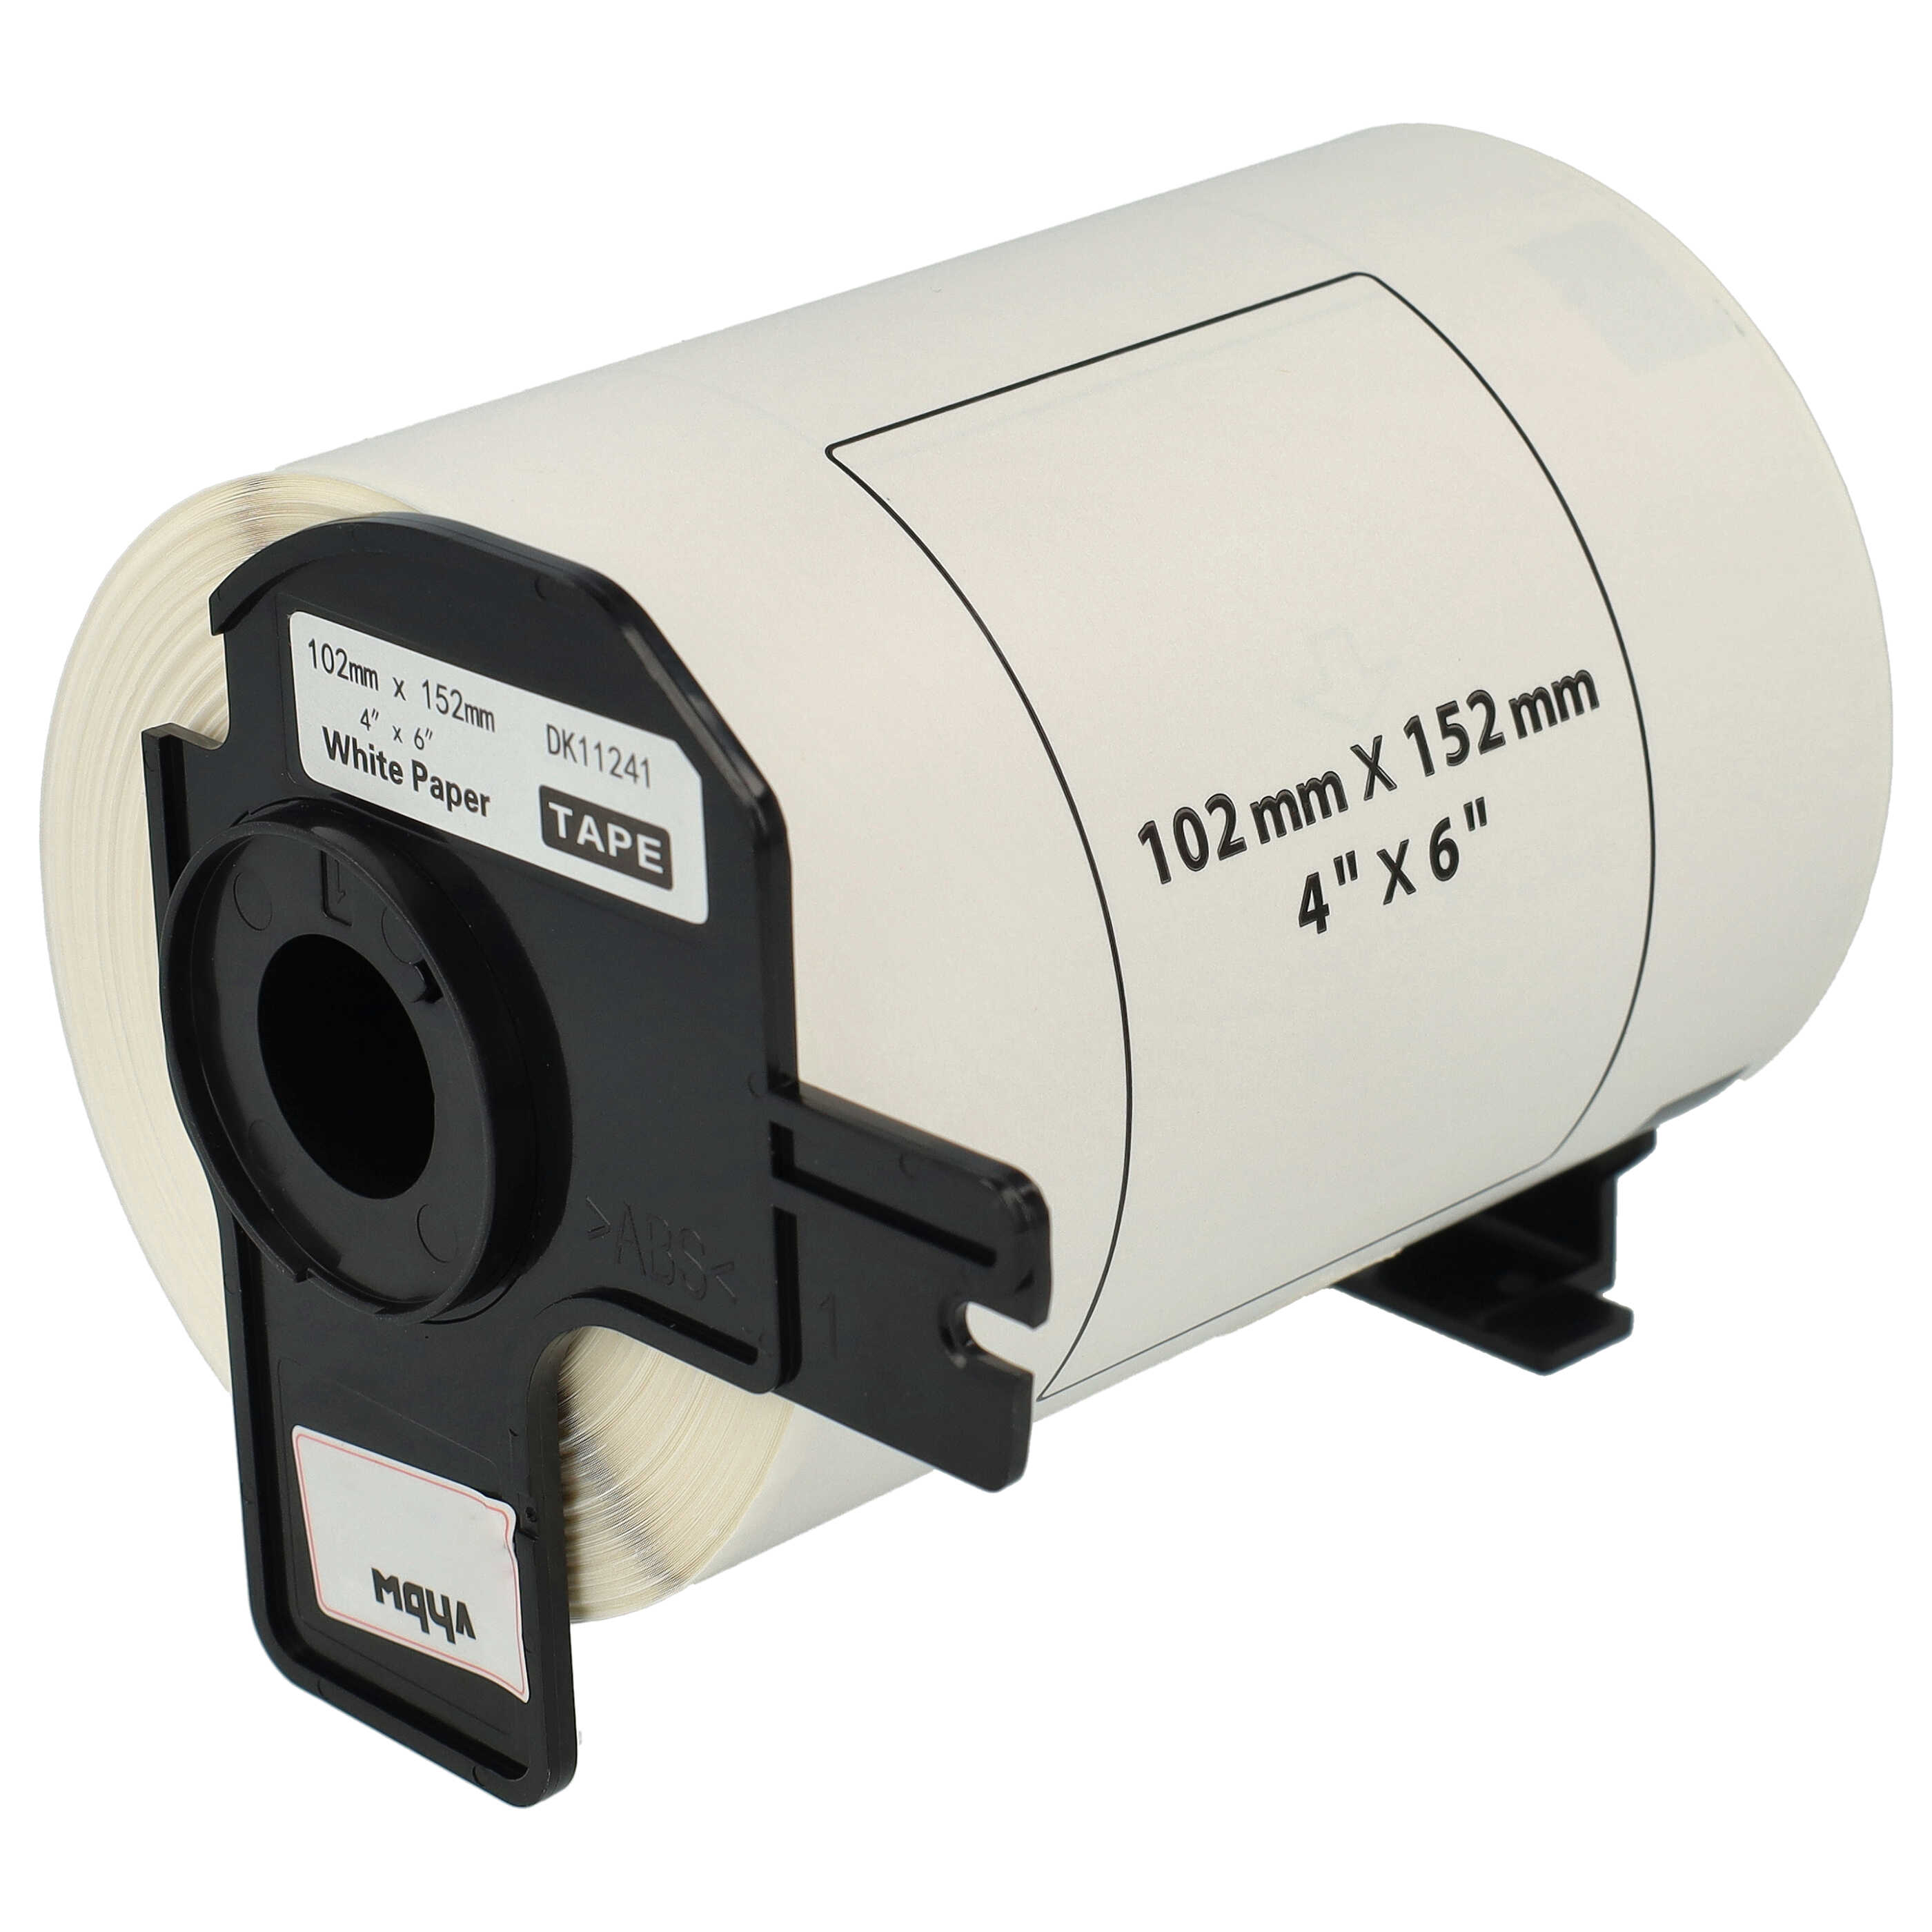 Rotolo etichette sostituisce Brother DK-11241 per etichettatrice - Standard 102mm x 152mm + supporto